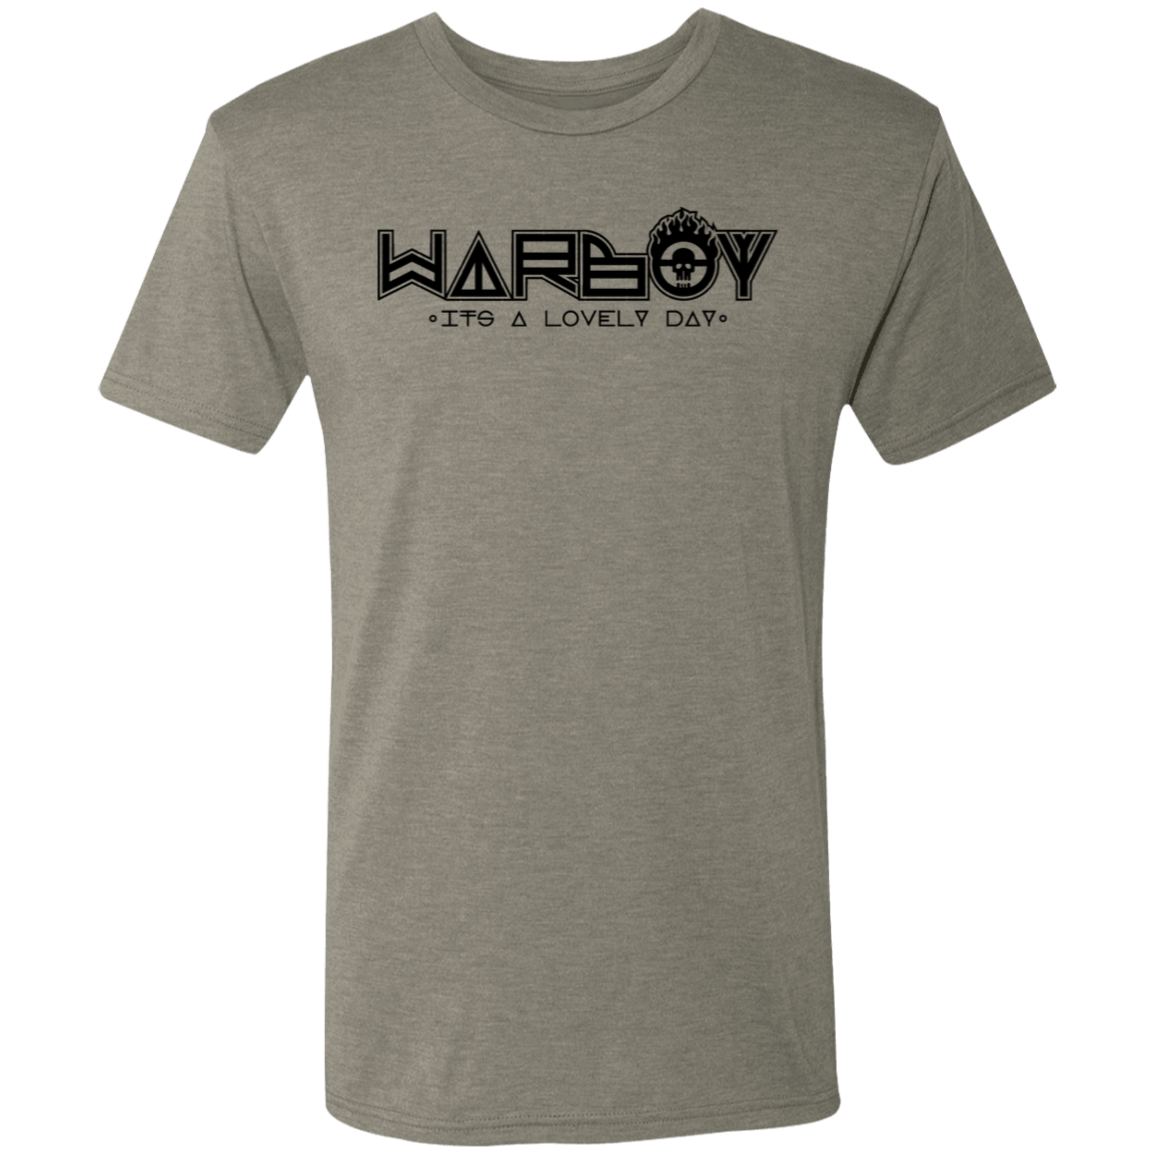 War Boy Men's Triblend T-Shirt